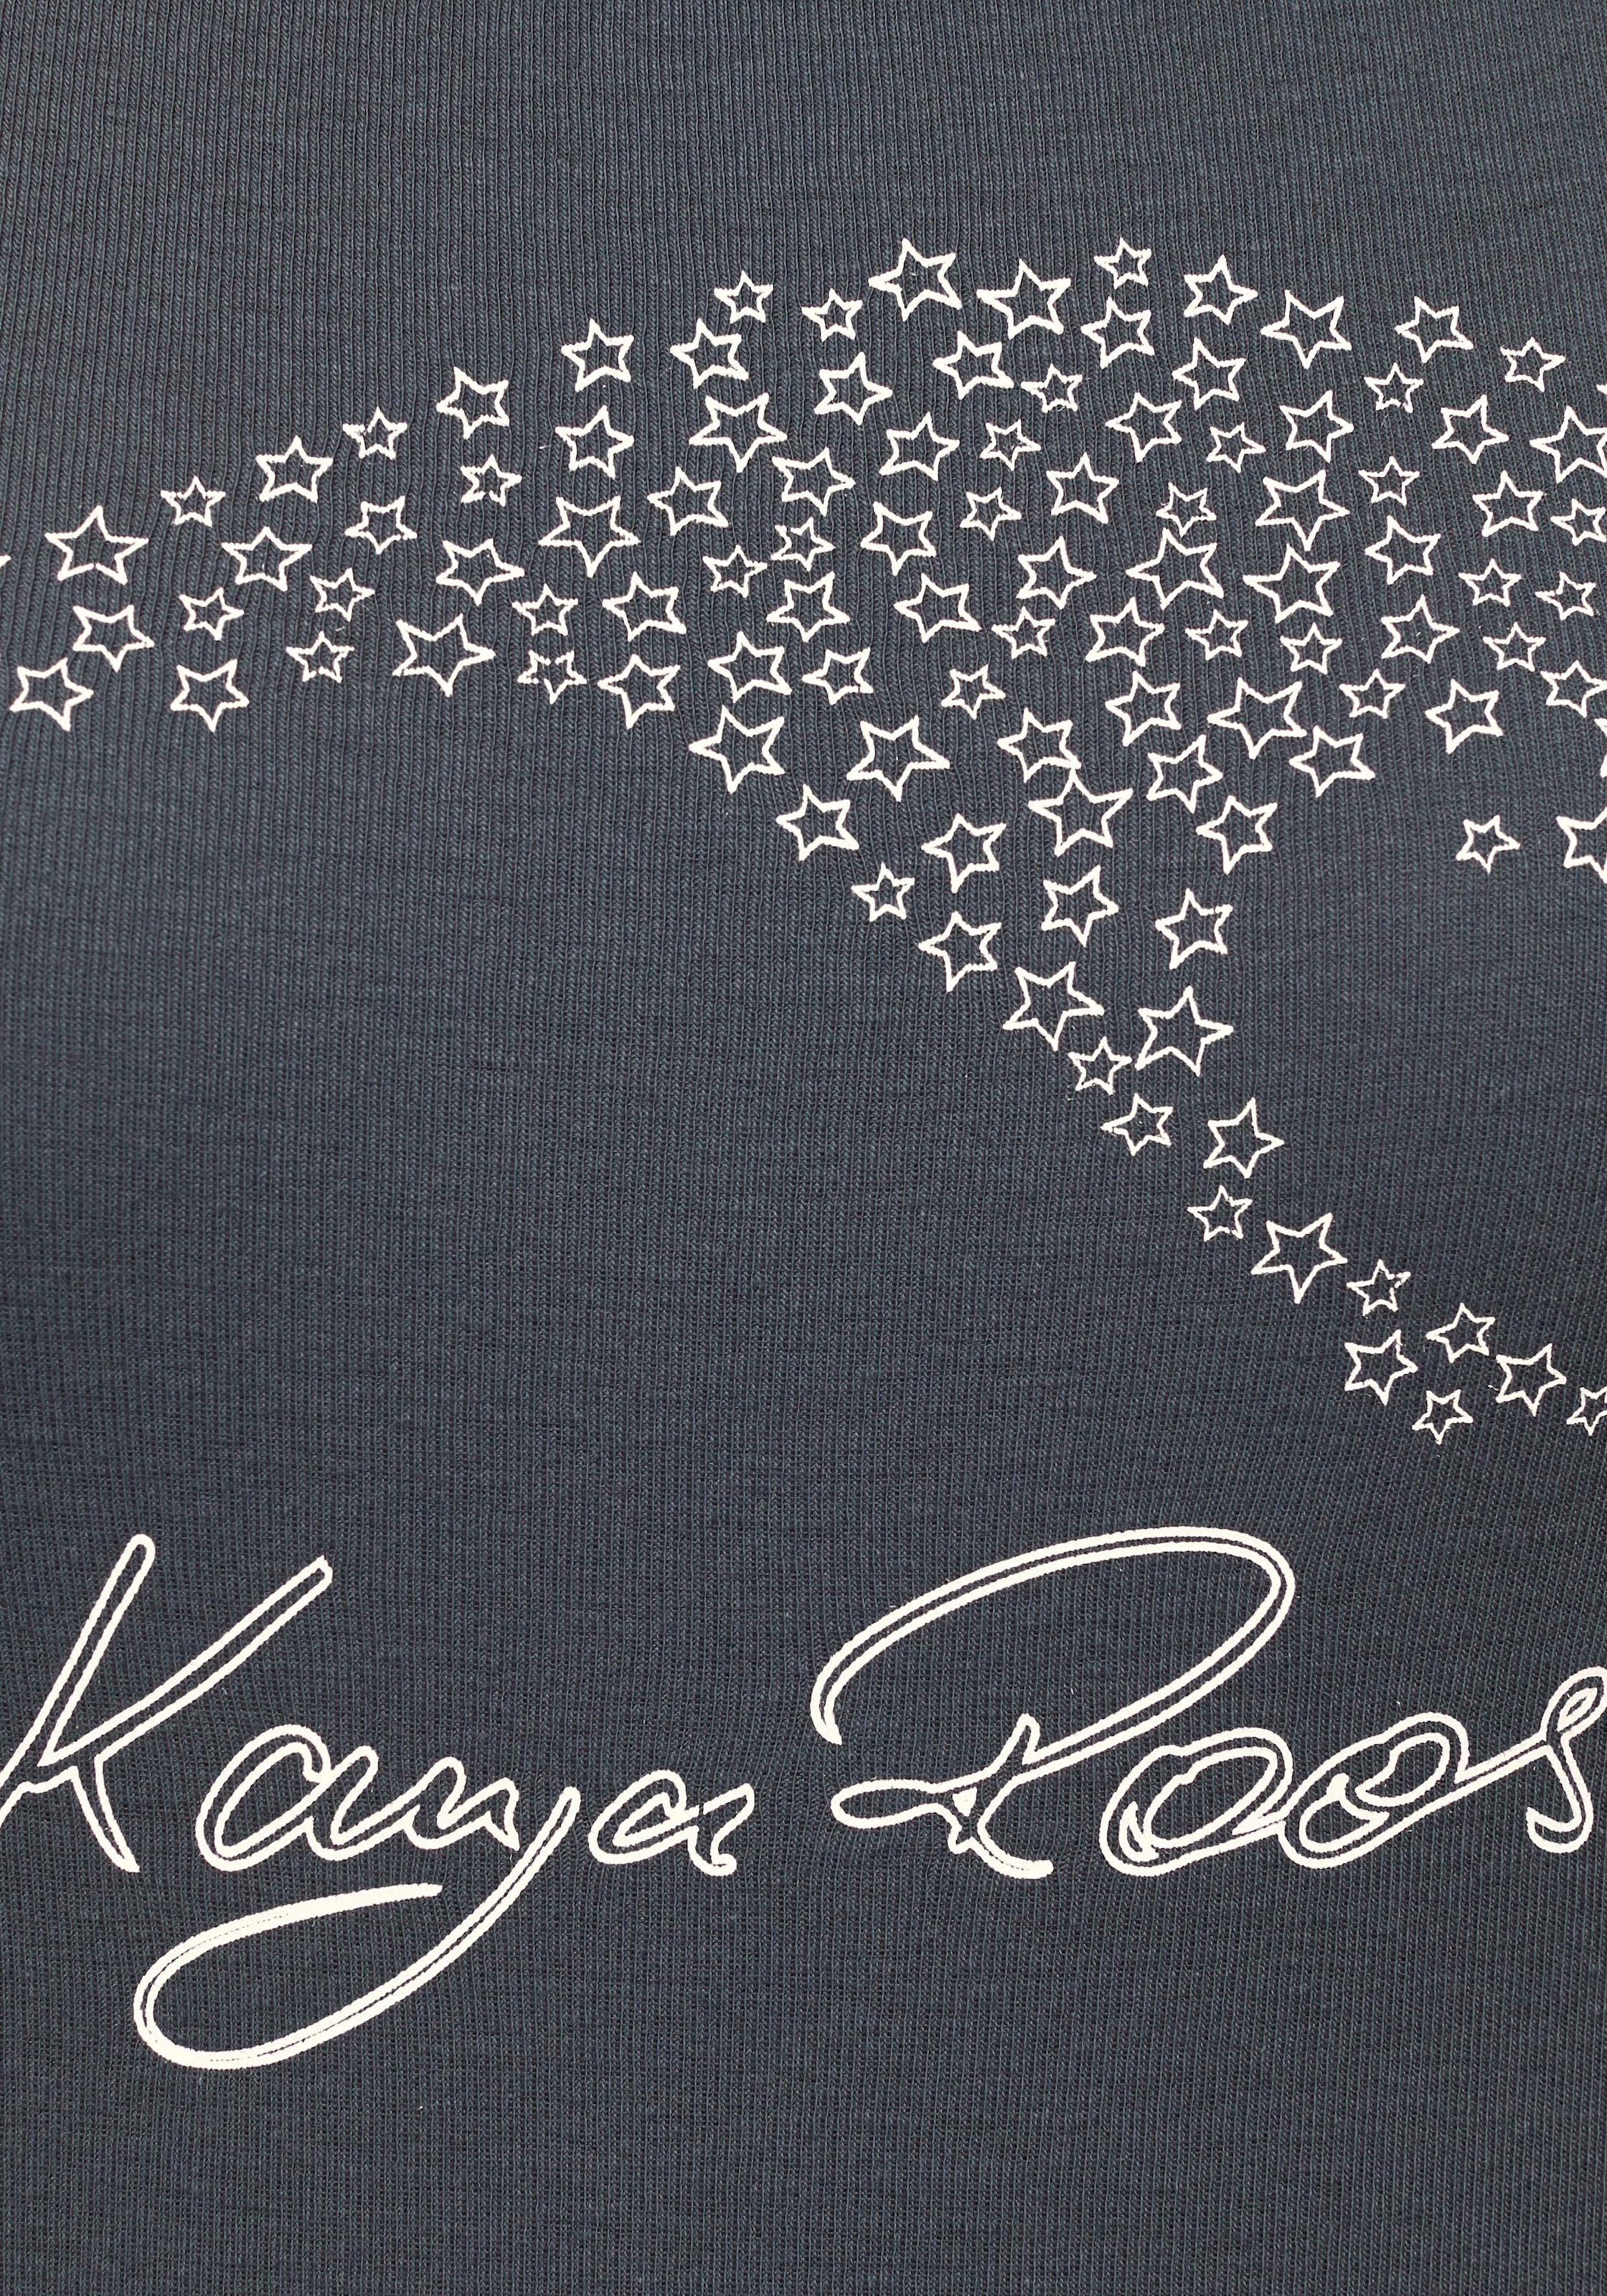 KangaROOS T-Shirt, mit grossem Label-Druck